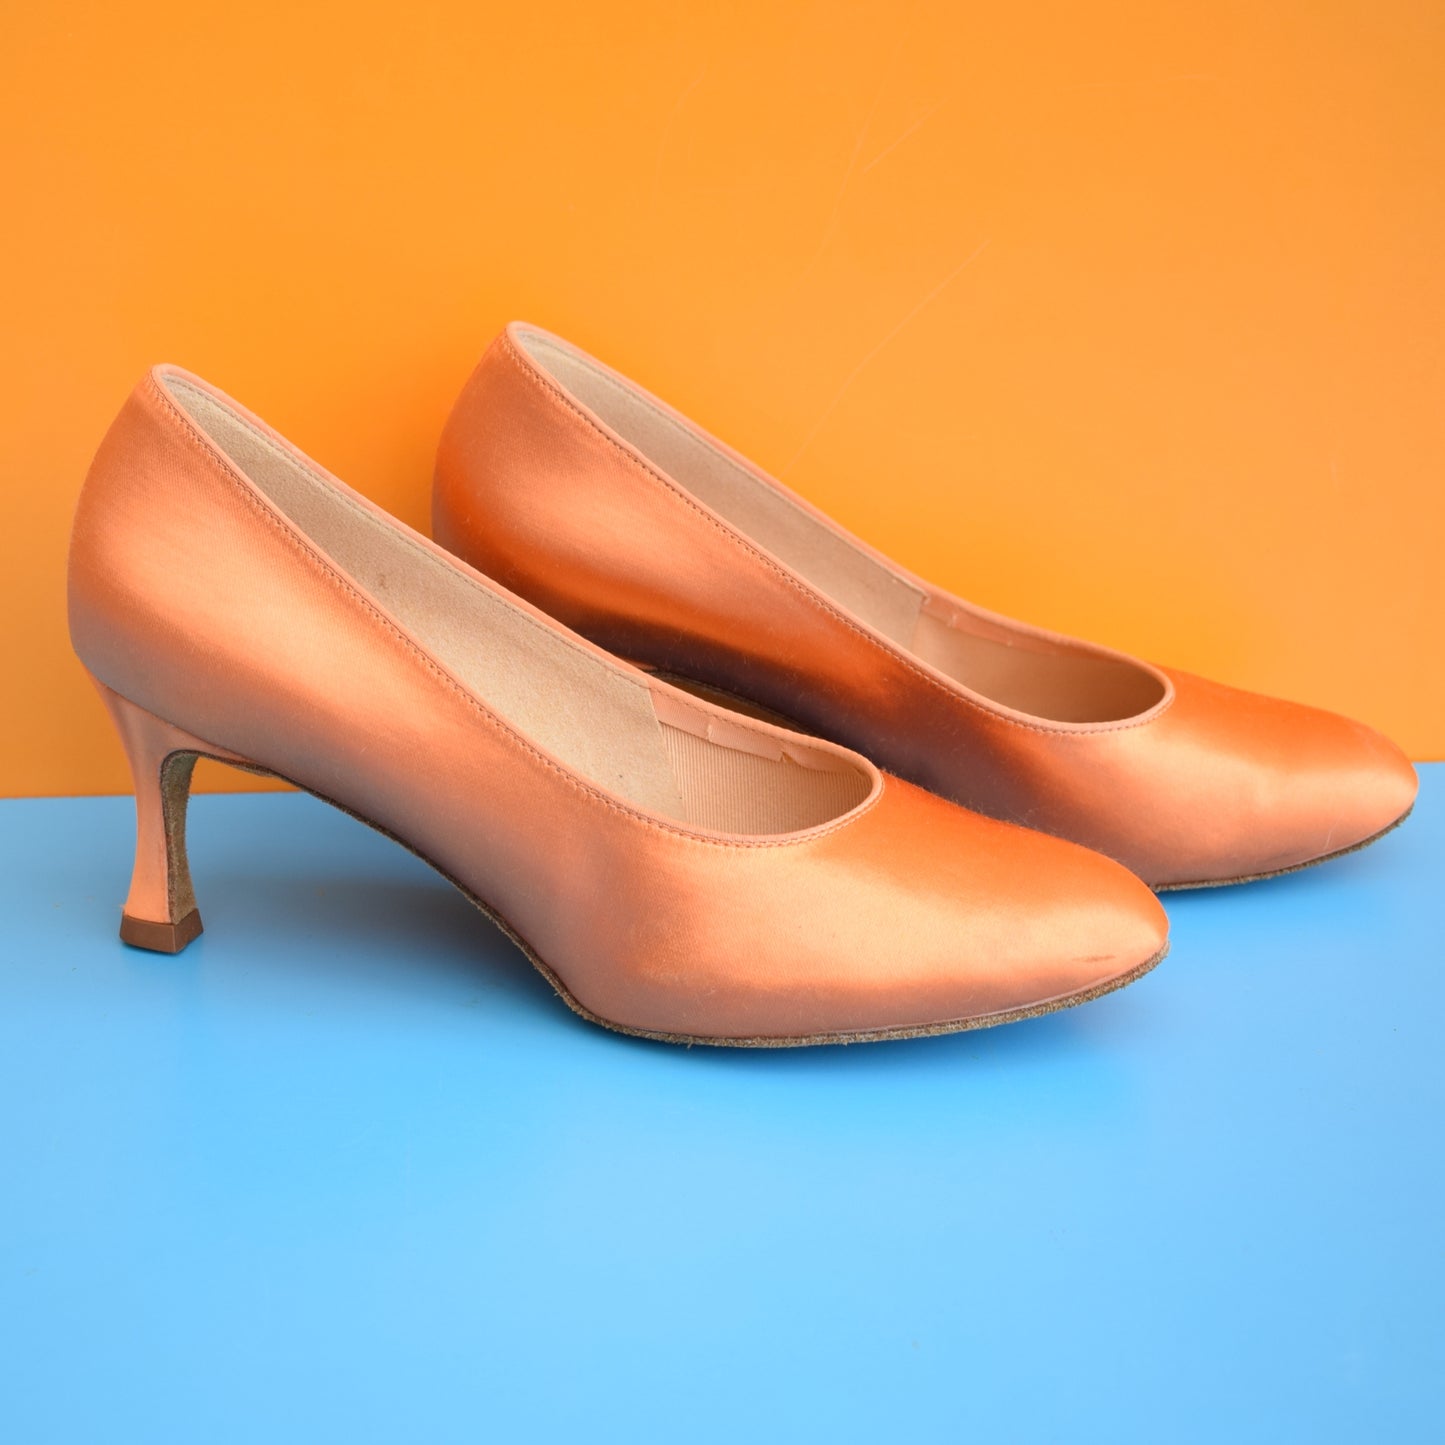 Vintage 1970s Satin Dance Shoes - Size 8 -Orange